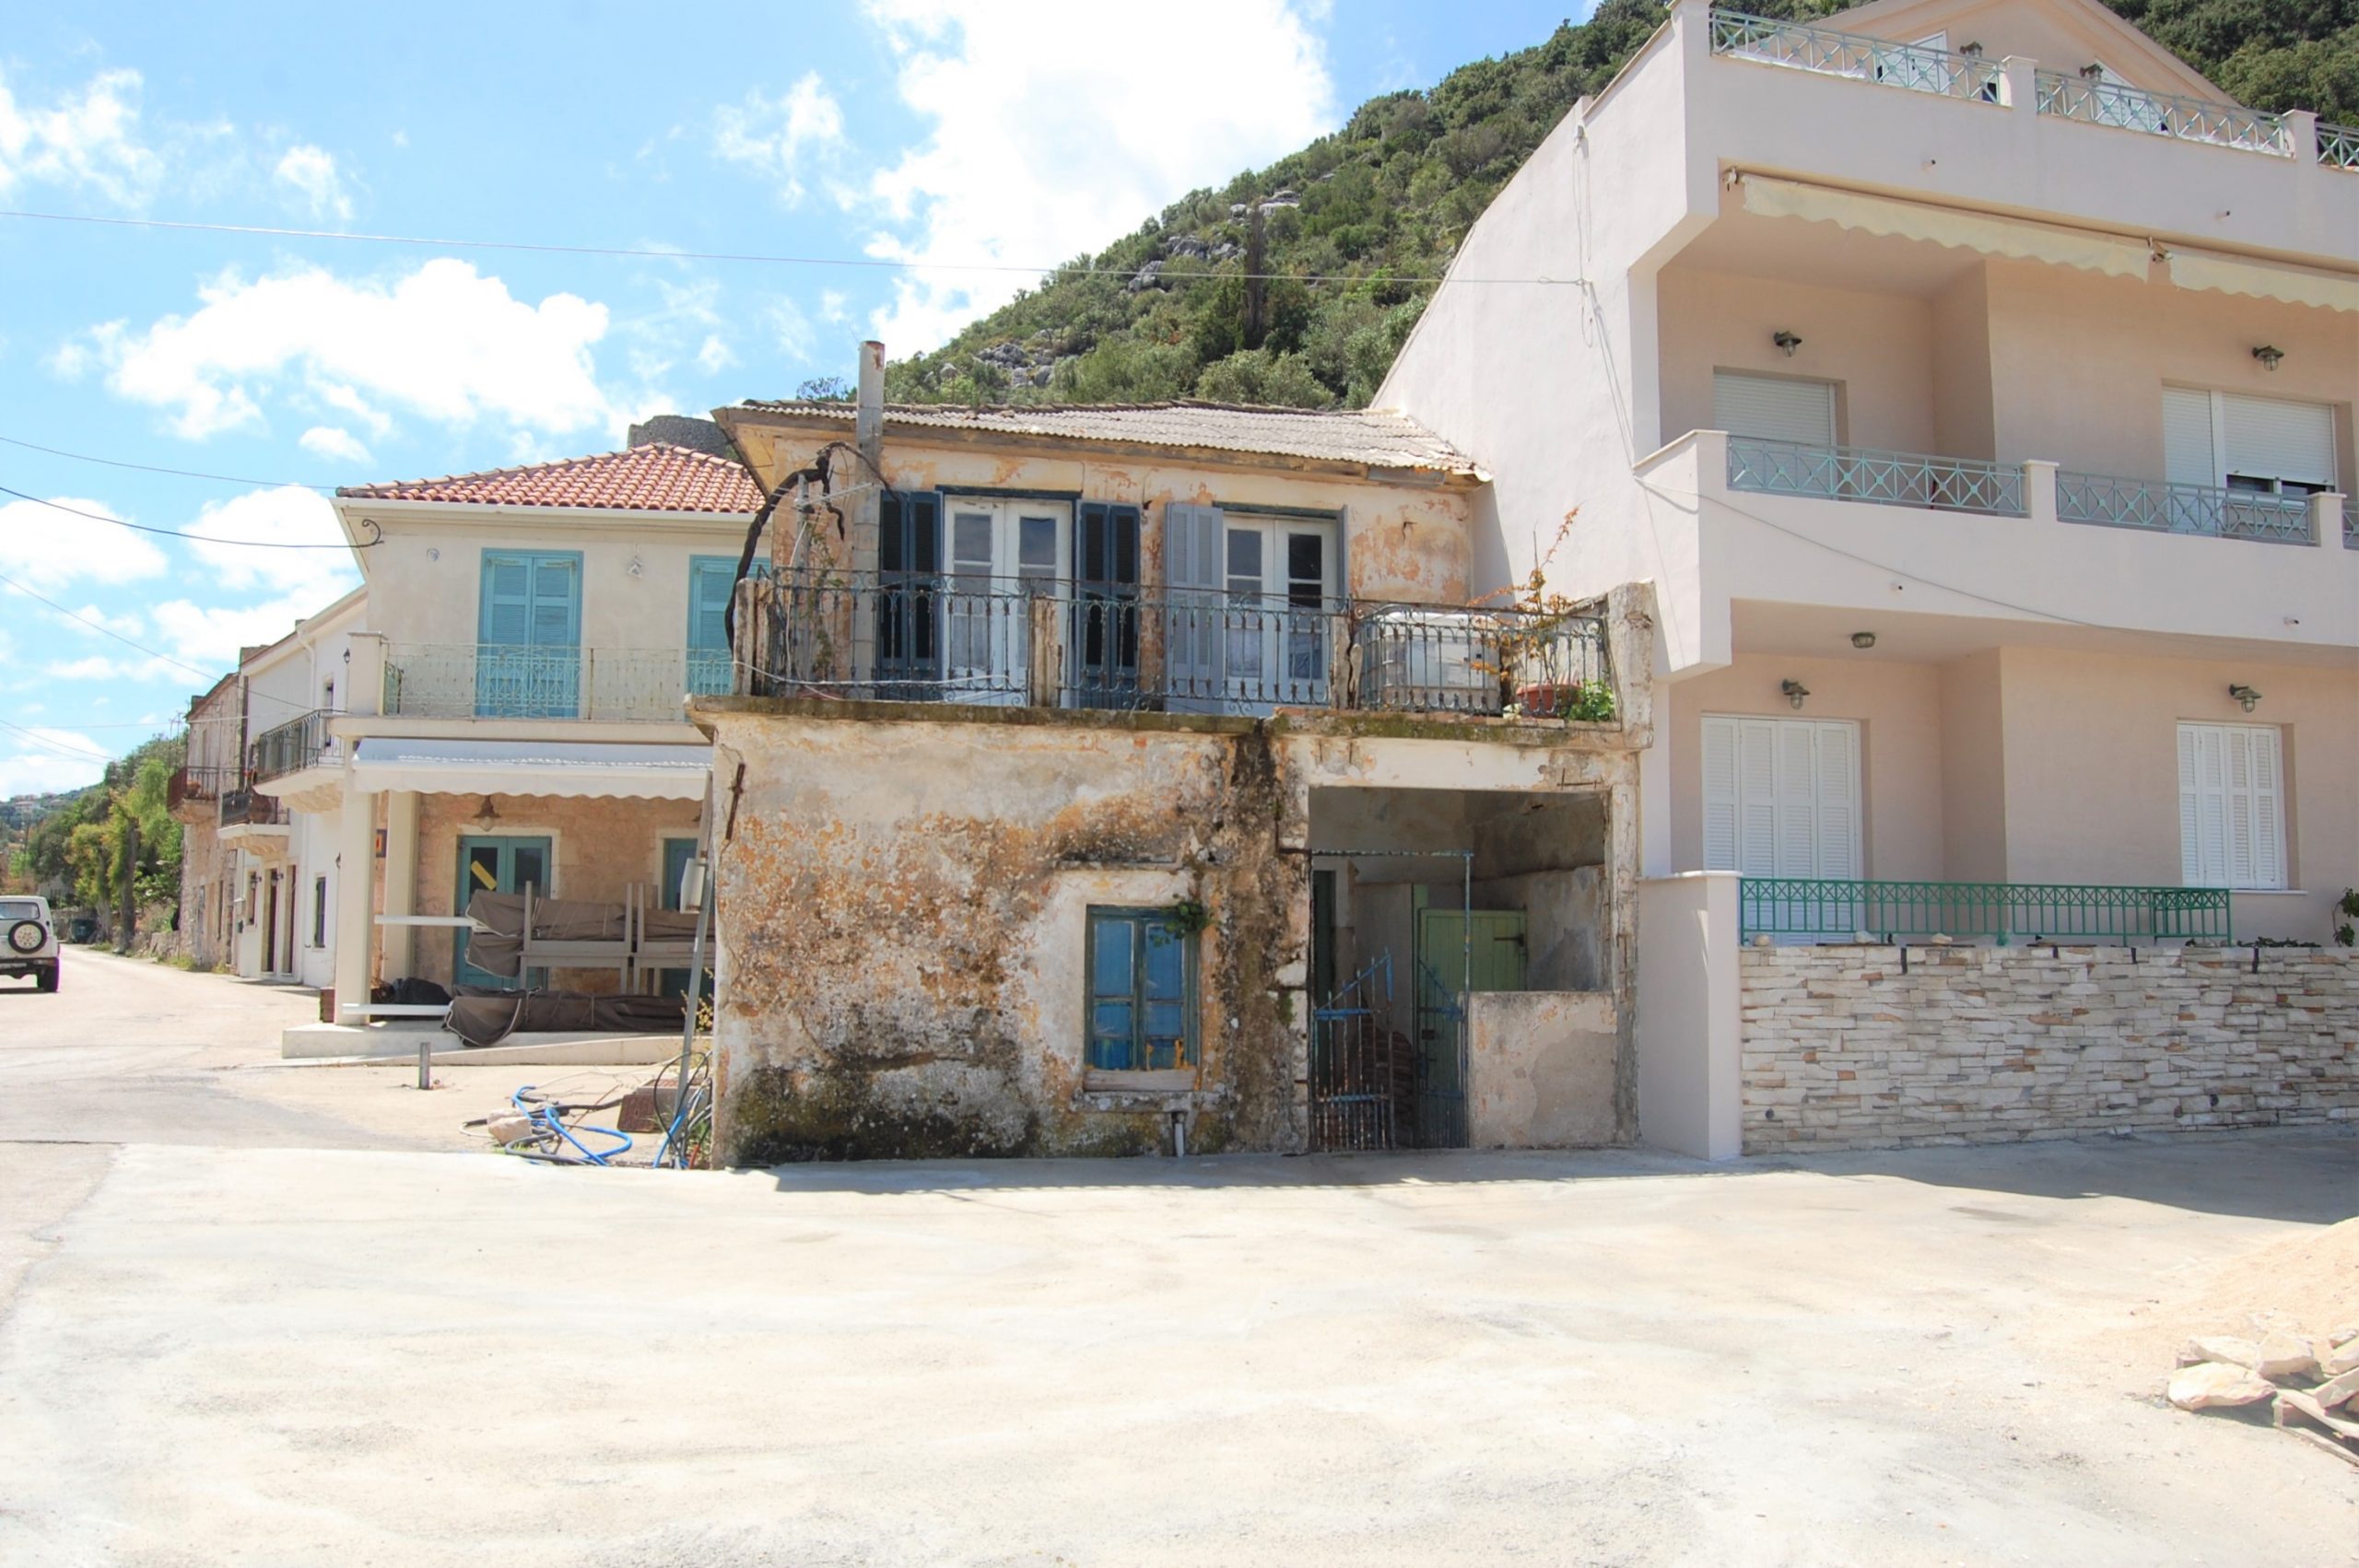 Εξωτερική πρόσοψη κατοικίας προς πώληση Ιθάκια Ελλάδα, Φρίκες